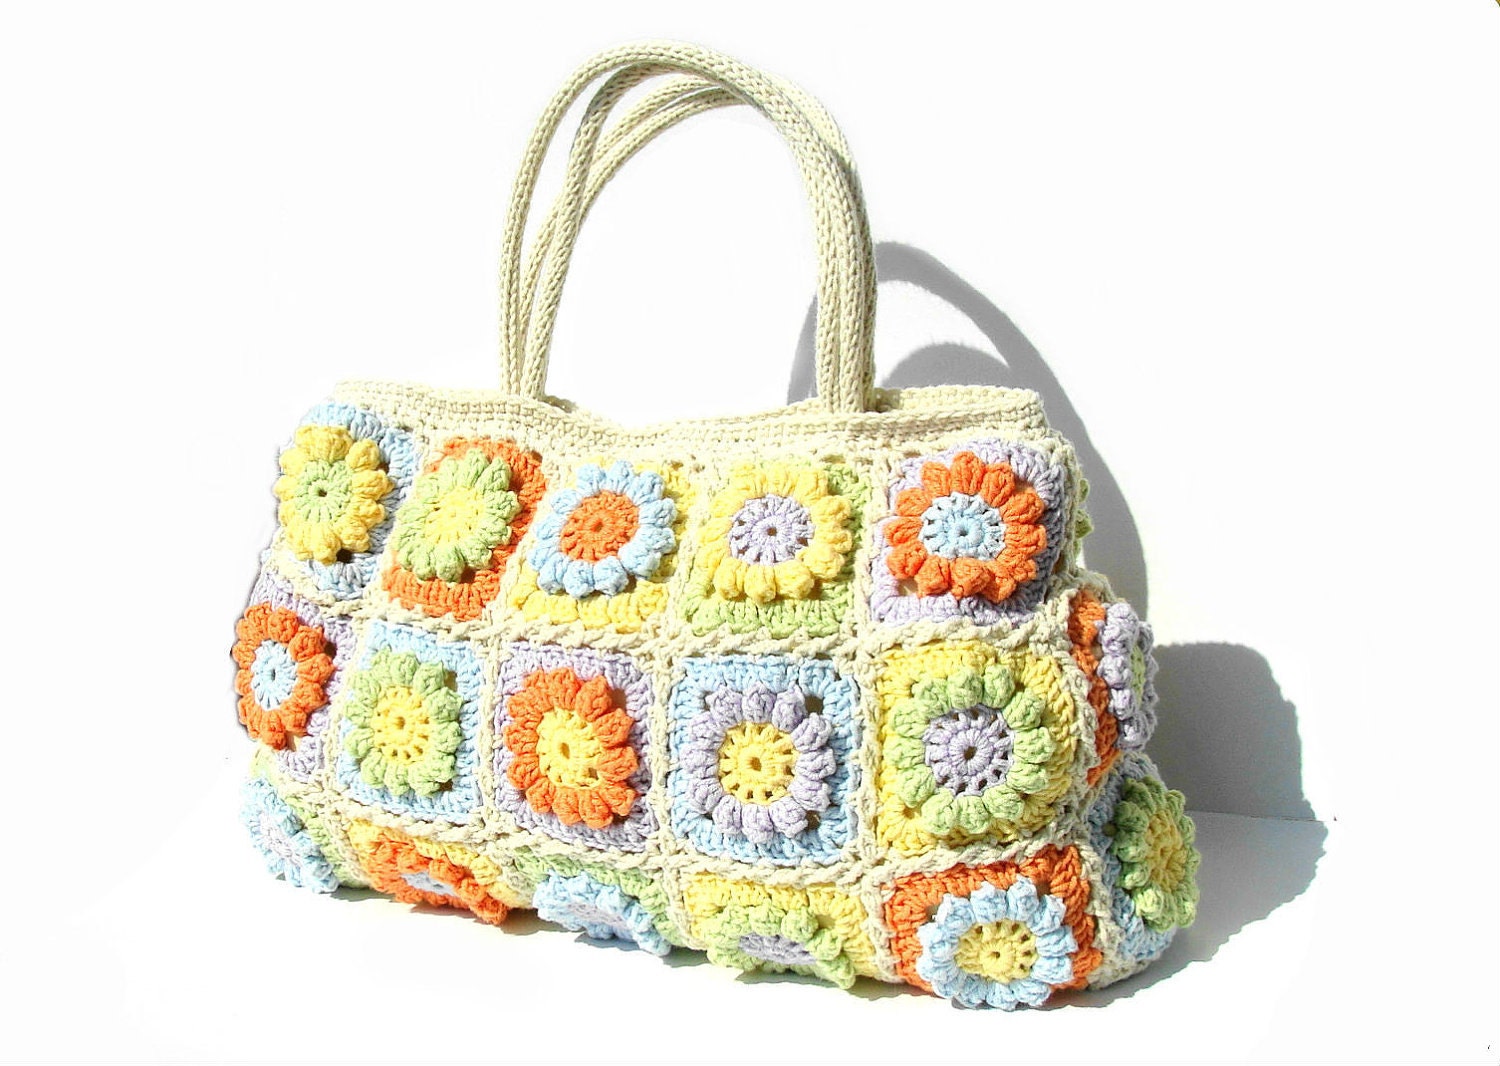 Flower crochet handbag, crochet bag in bright summer colors